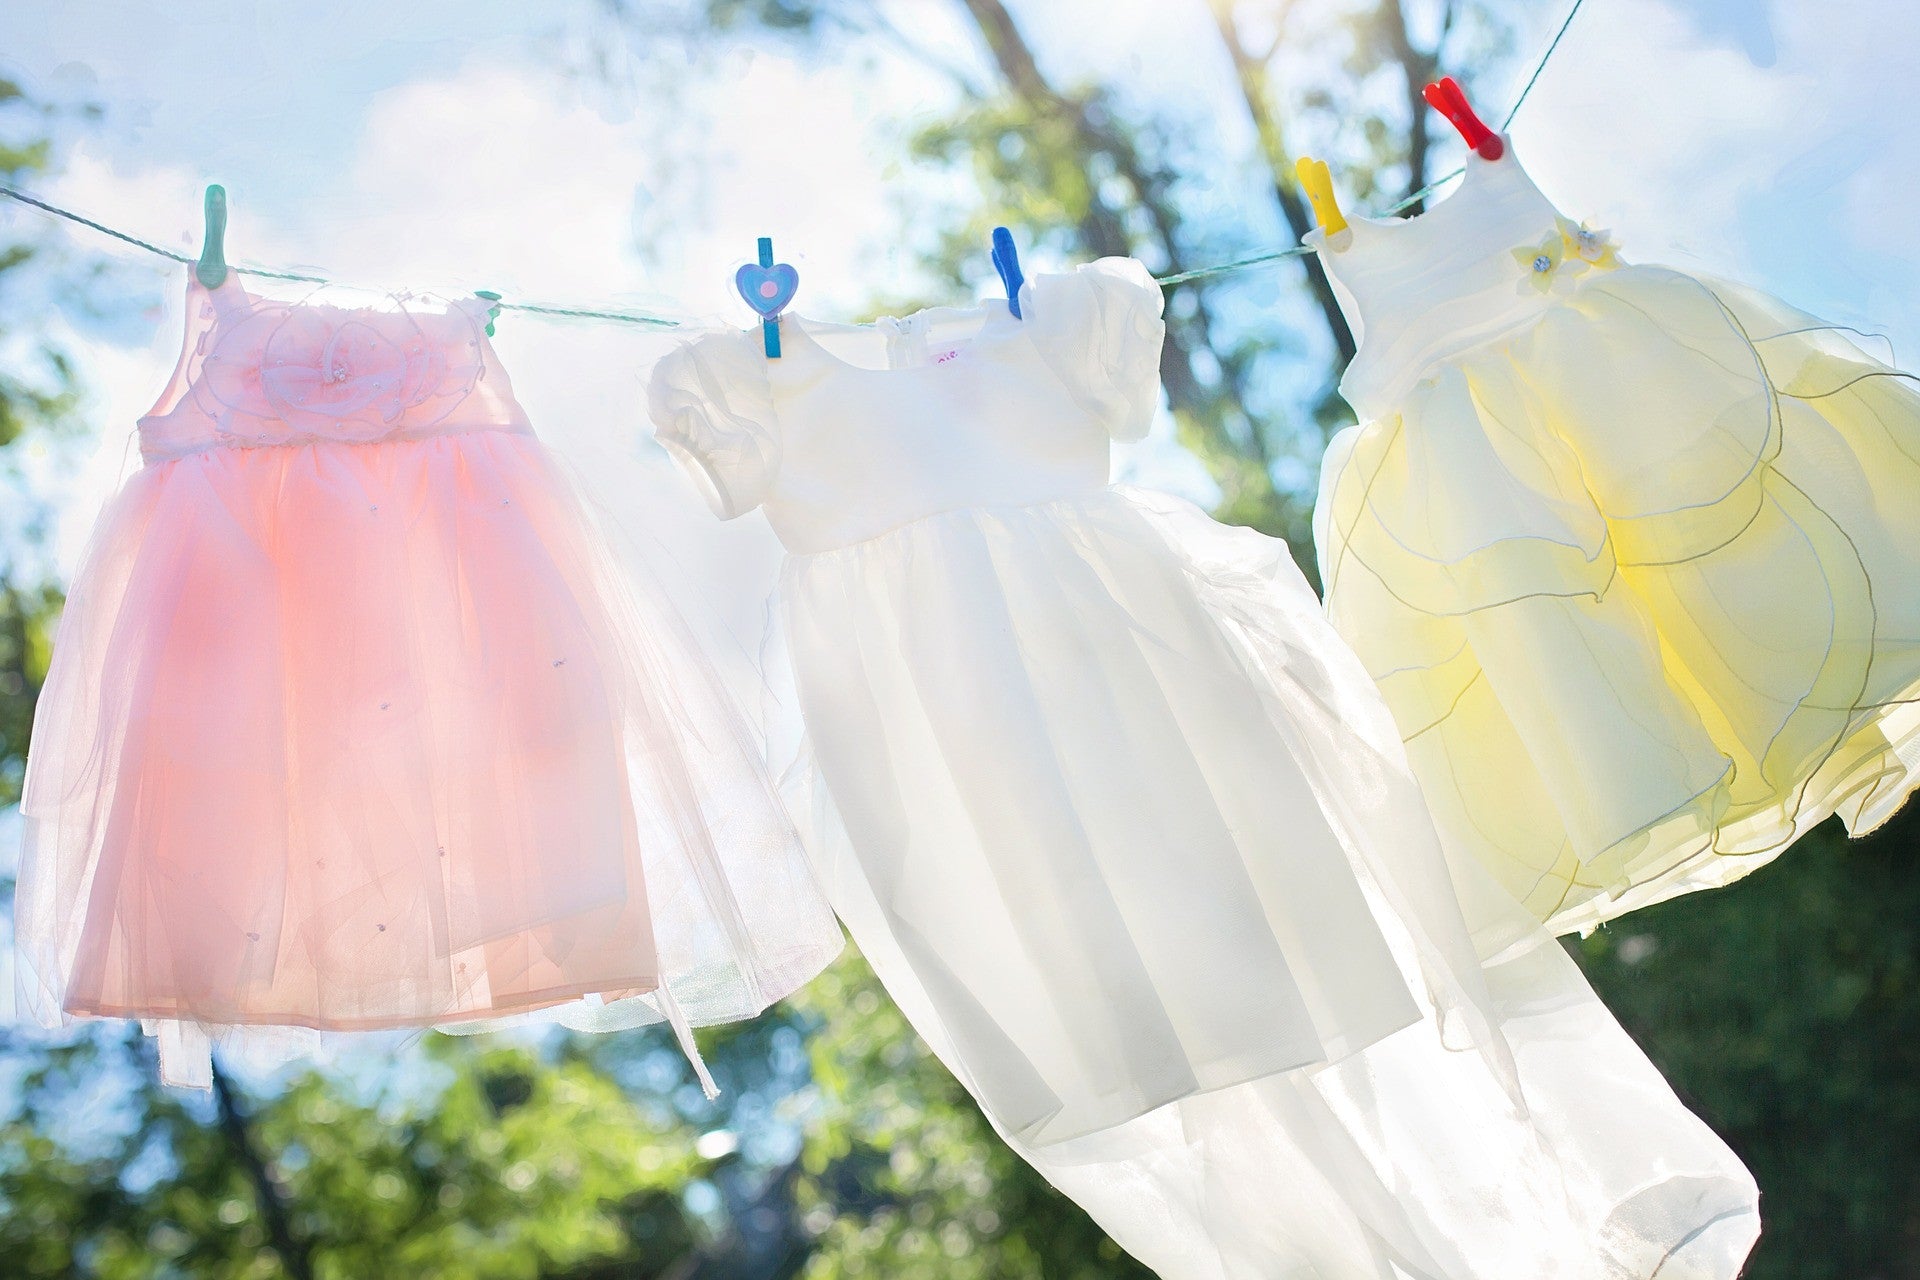 Come lavare i vestiti dei bambini: consigli per igiene e lavaggio